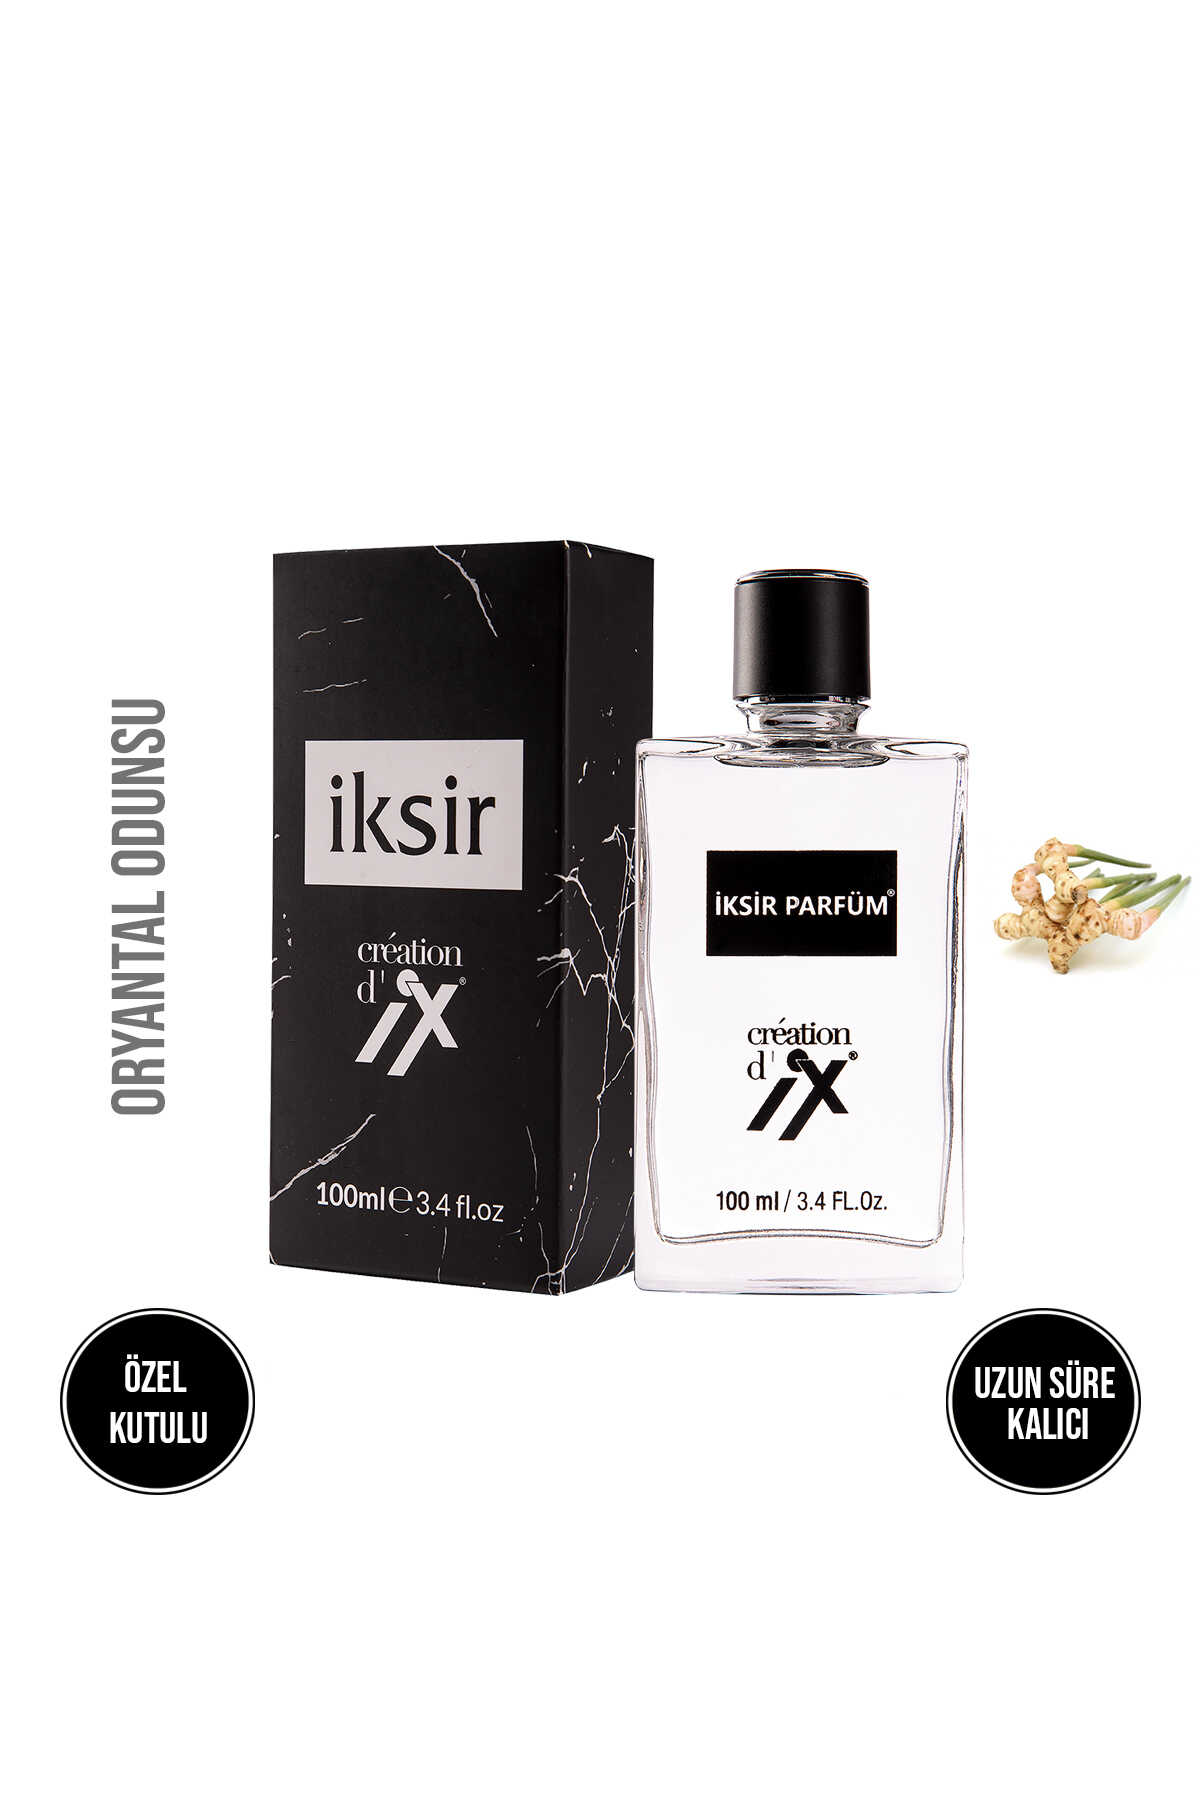 Özel Seri Blc Notte 508 Erkek Parfüm - Kutulu Etkili Ve Uzun Süre Kalıcı 100 ML